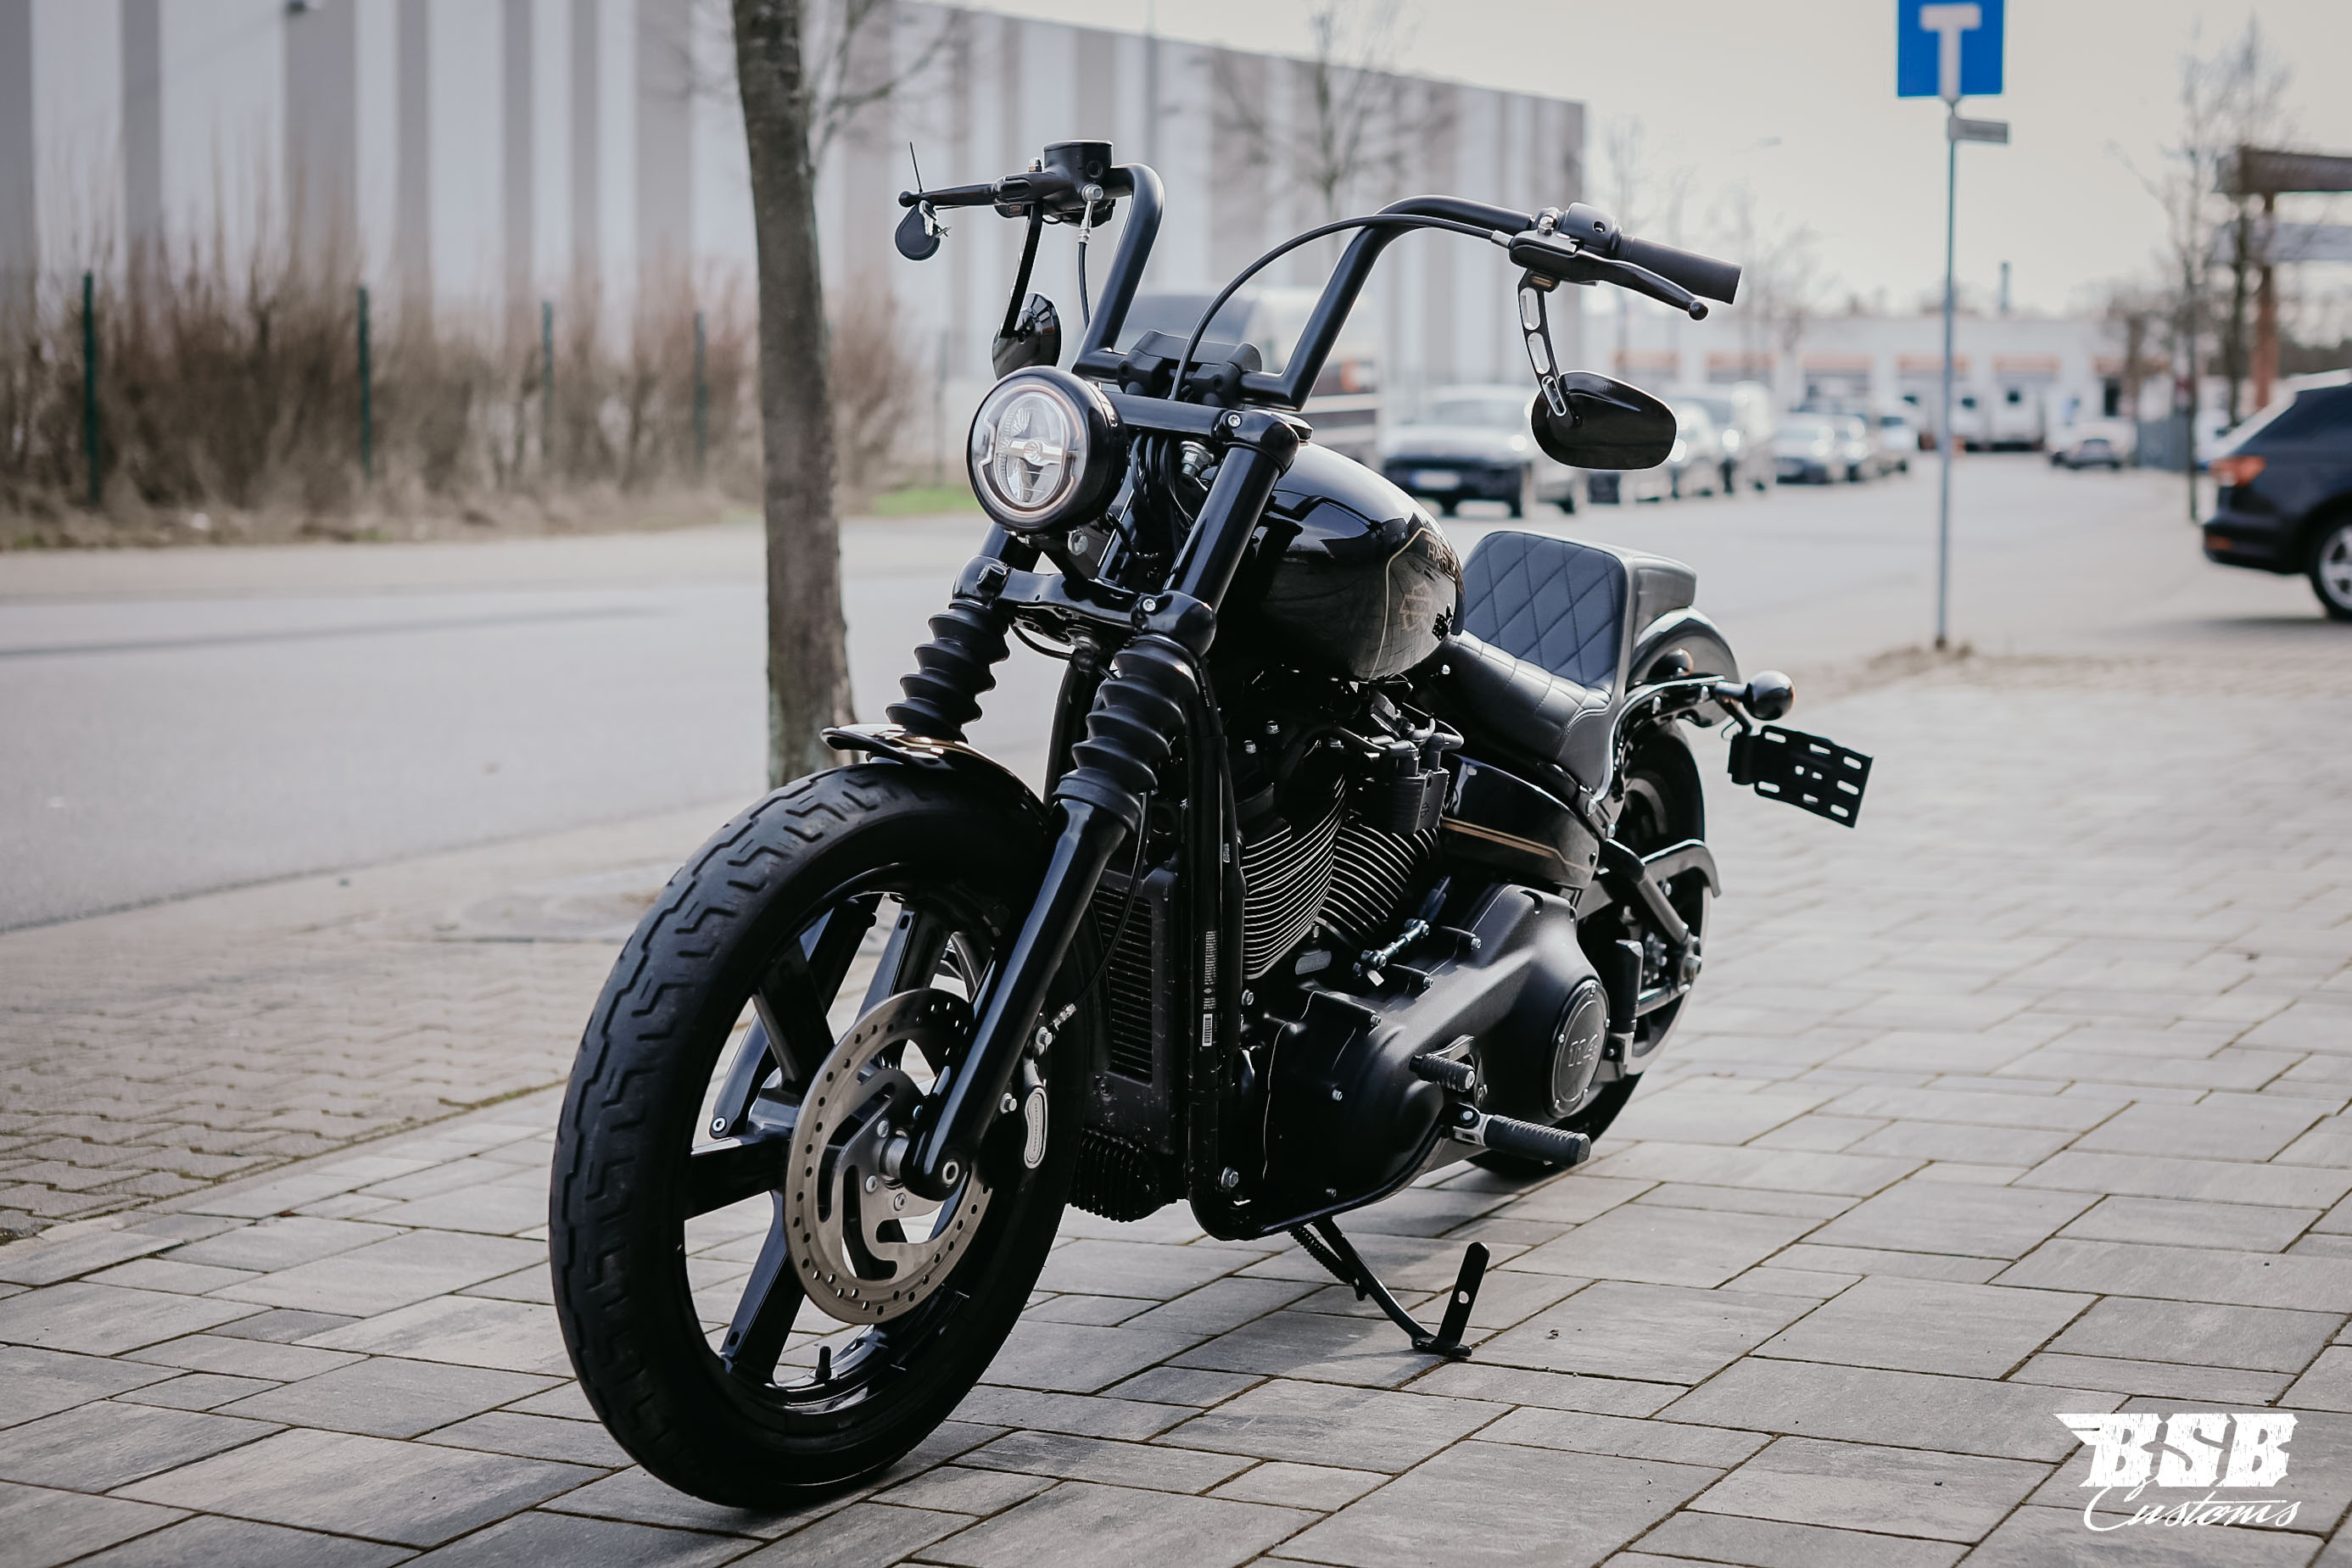 2022 Harley Davidson FXBBS Street BOB 114 CUI Finanzierung auch ohne Anzahlung möglich 